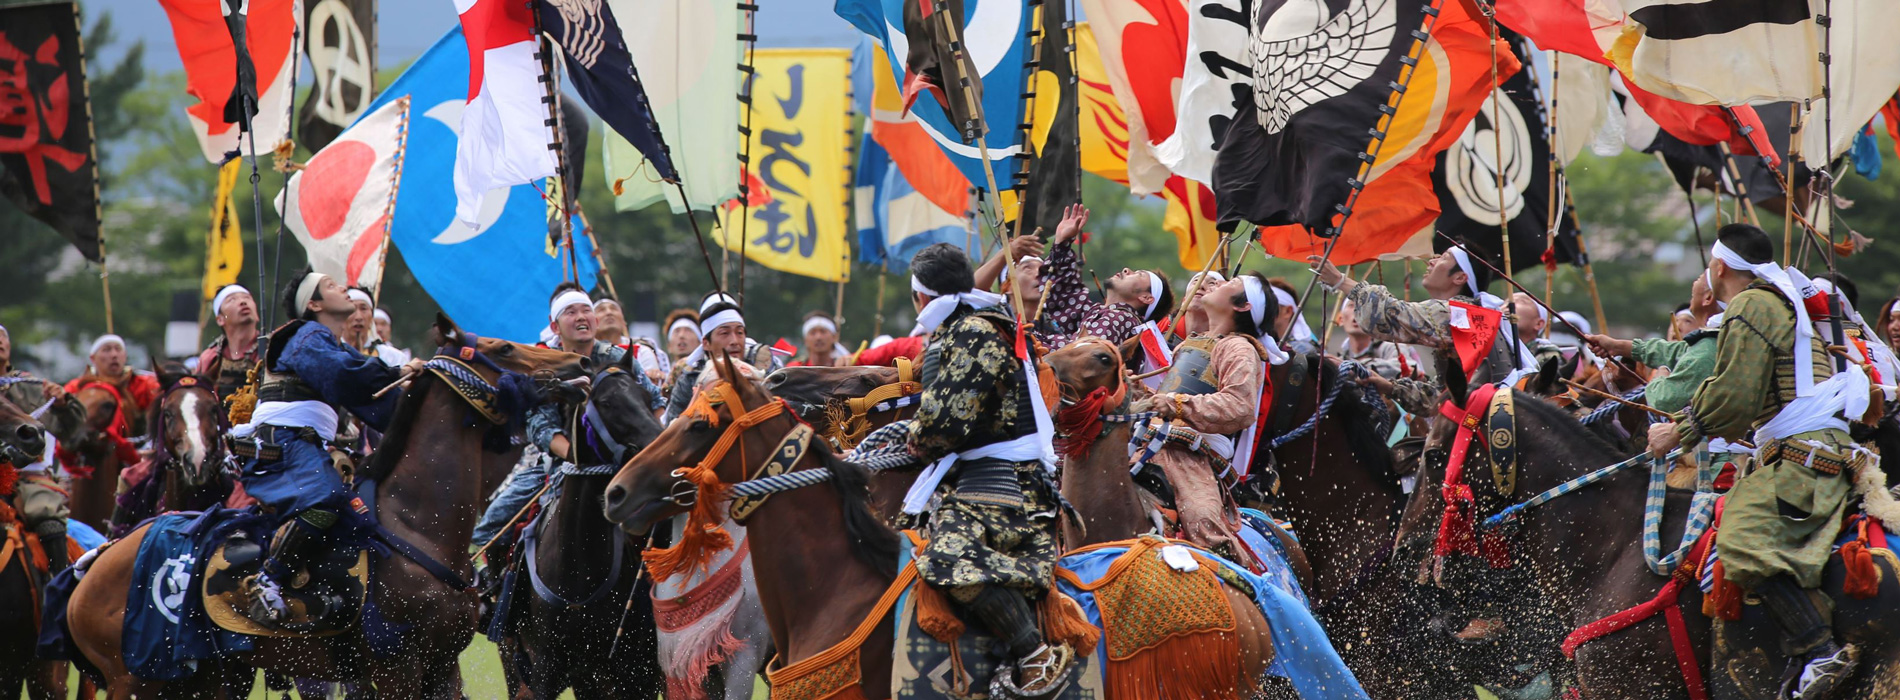 Summer Festivals in Fukushima 2019